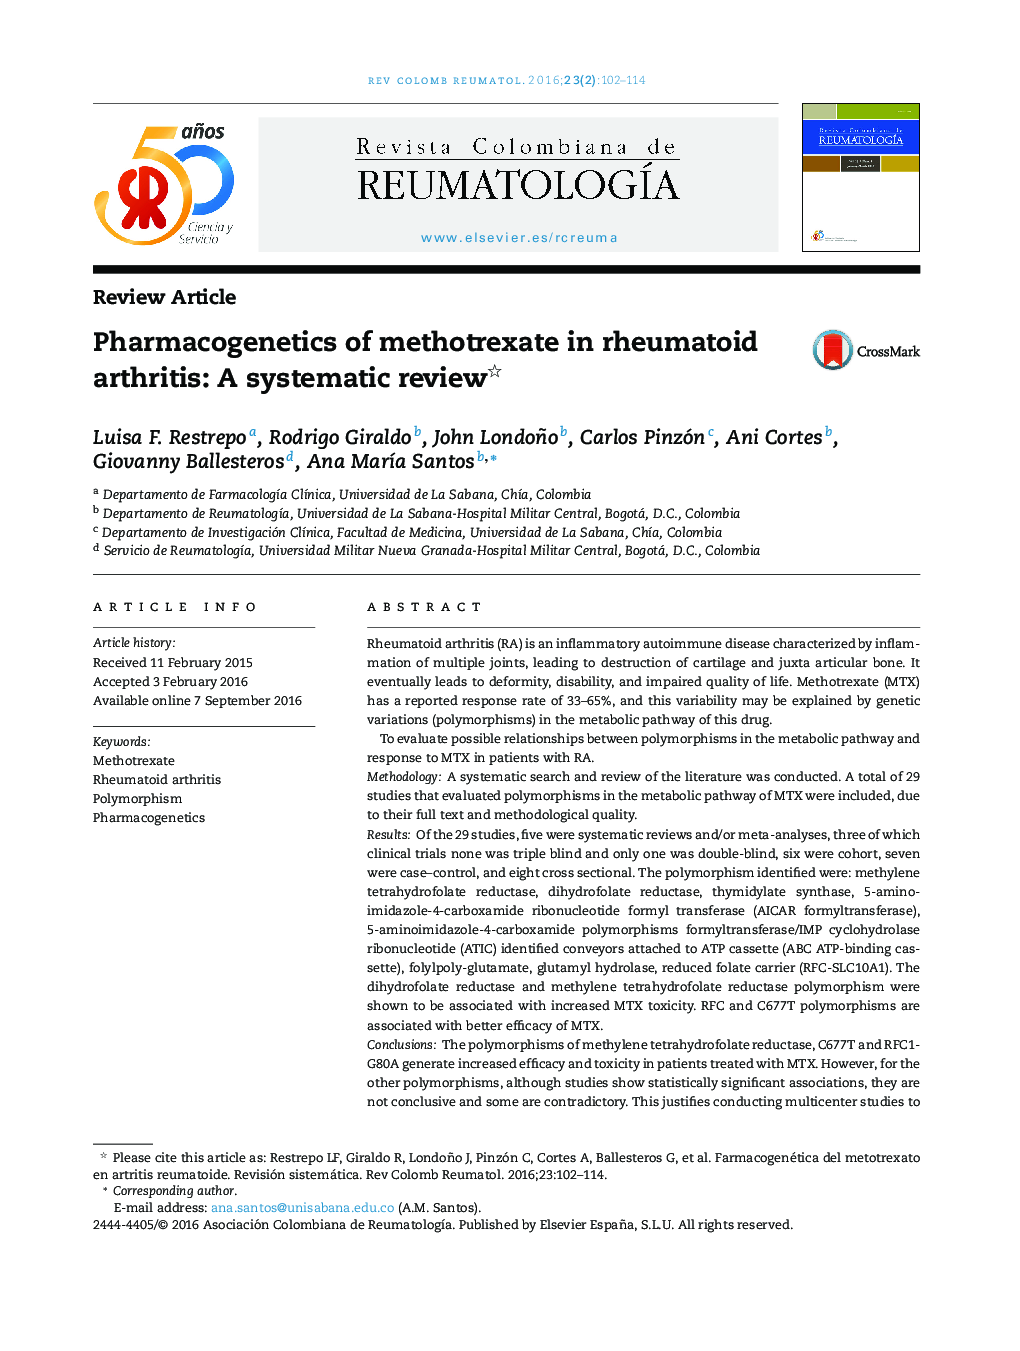 فارماکوگنتیک متوترکسات در آرتریت روماتوئید: یک بررسی سیستماتیک 